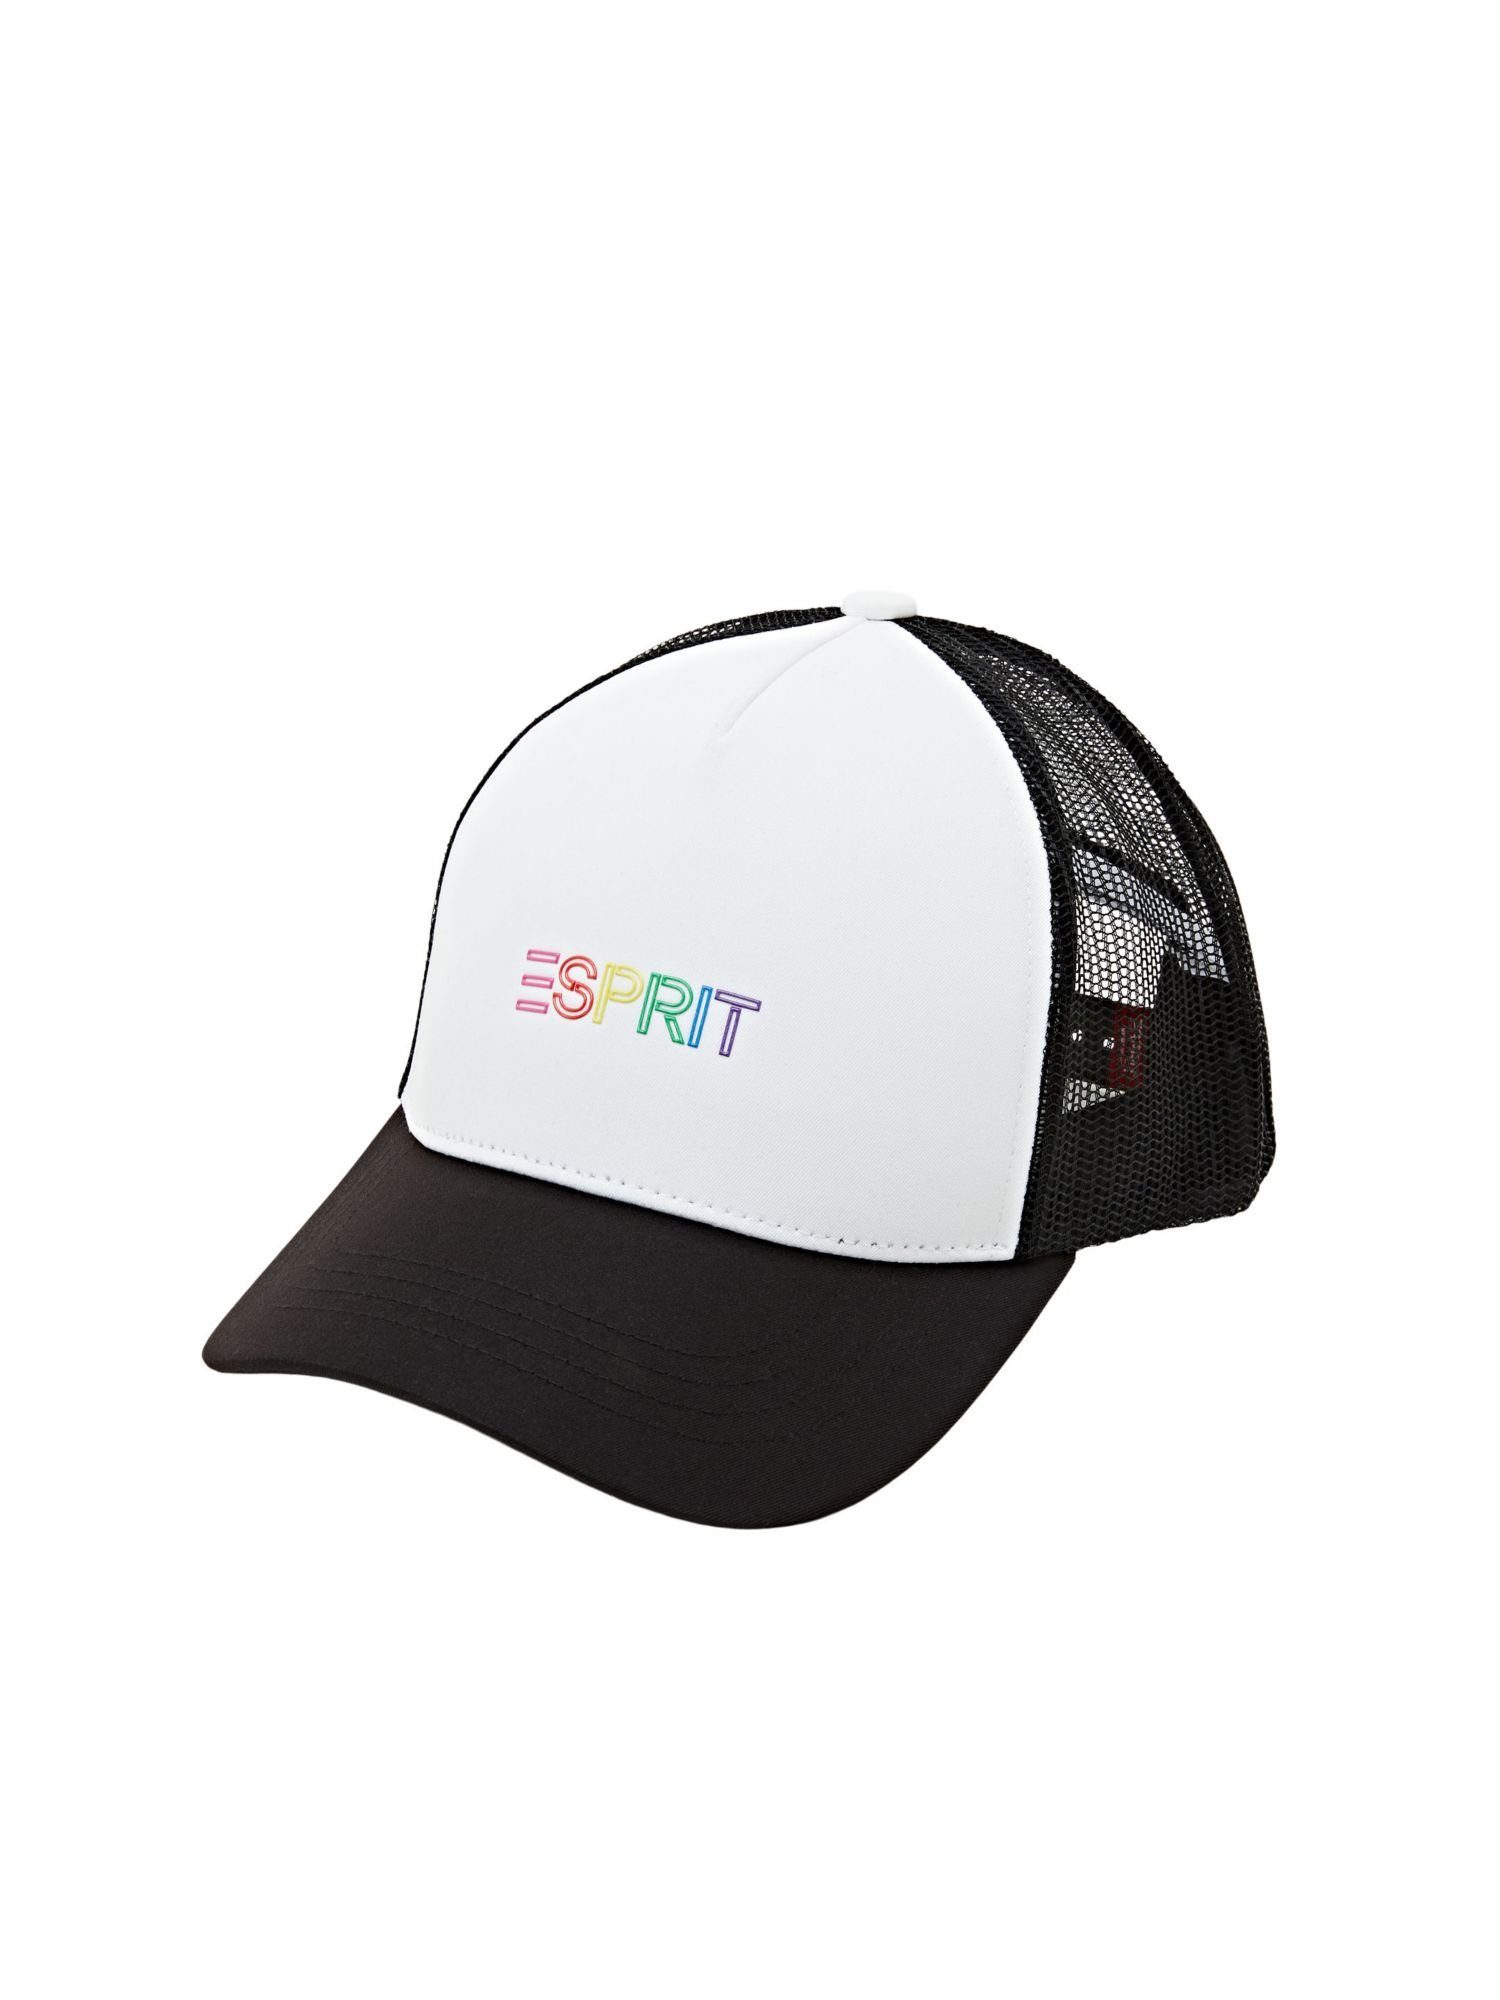 Esprit Baseball Cap Trucker-Cap BLACK